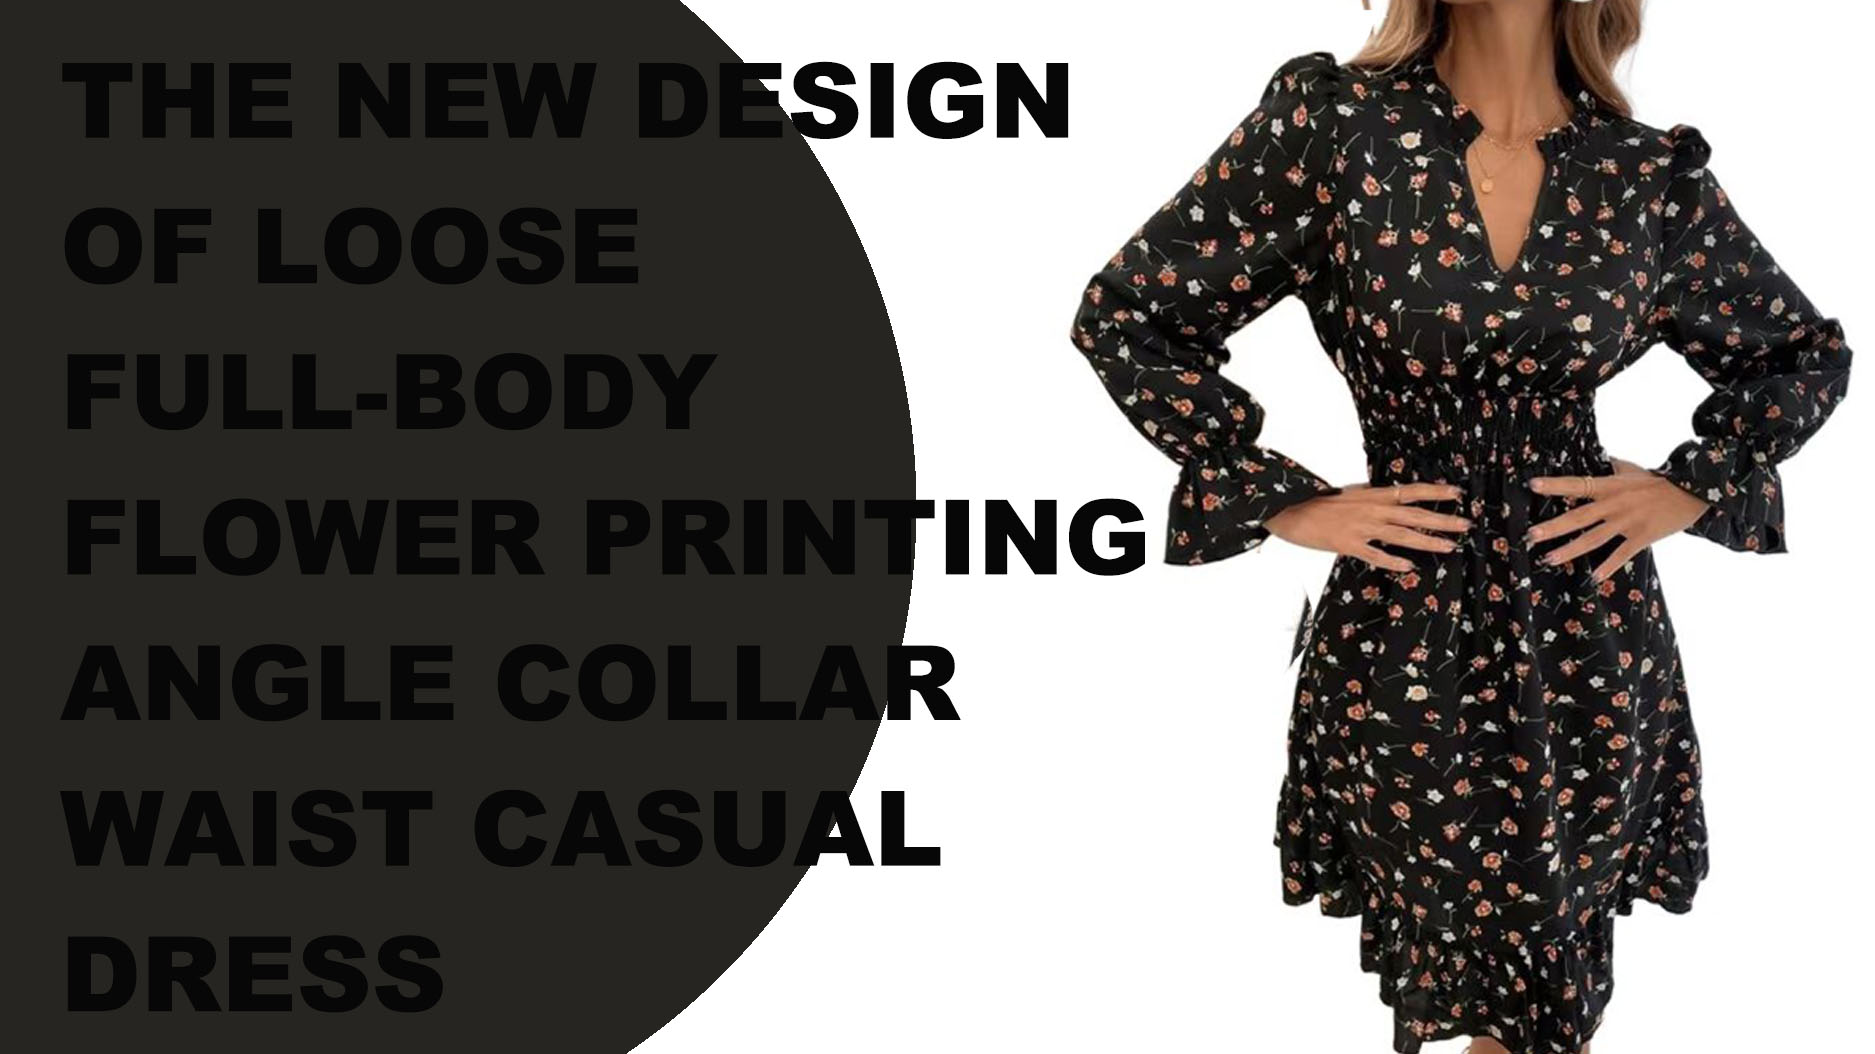 Das neue Design eines lockeren Ganzkörper-Blumendrucks ohne Eckkragen und Taillen-Freizeitkleid für Frauen